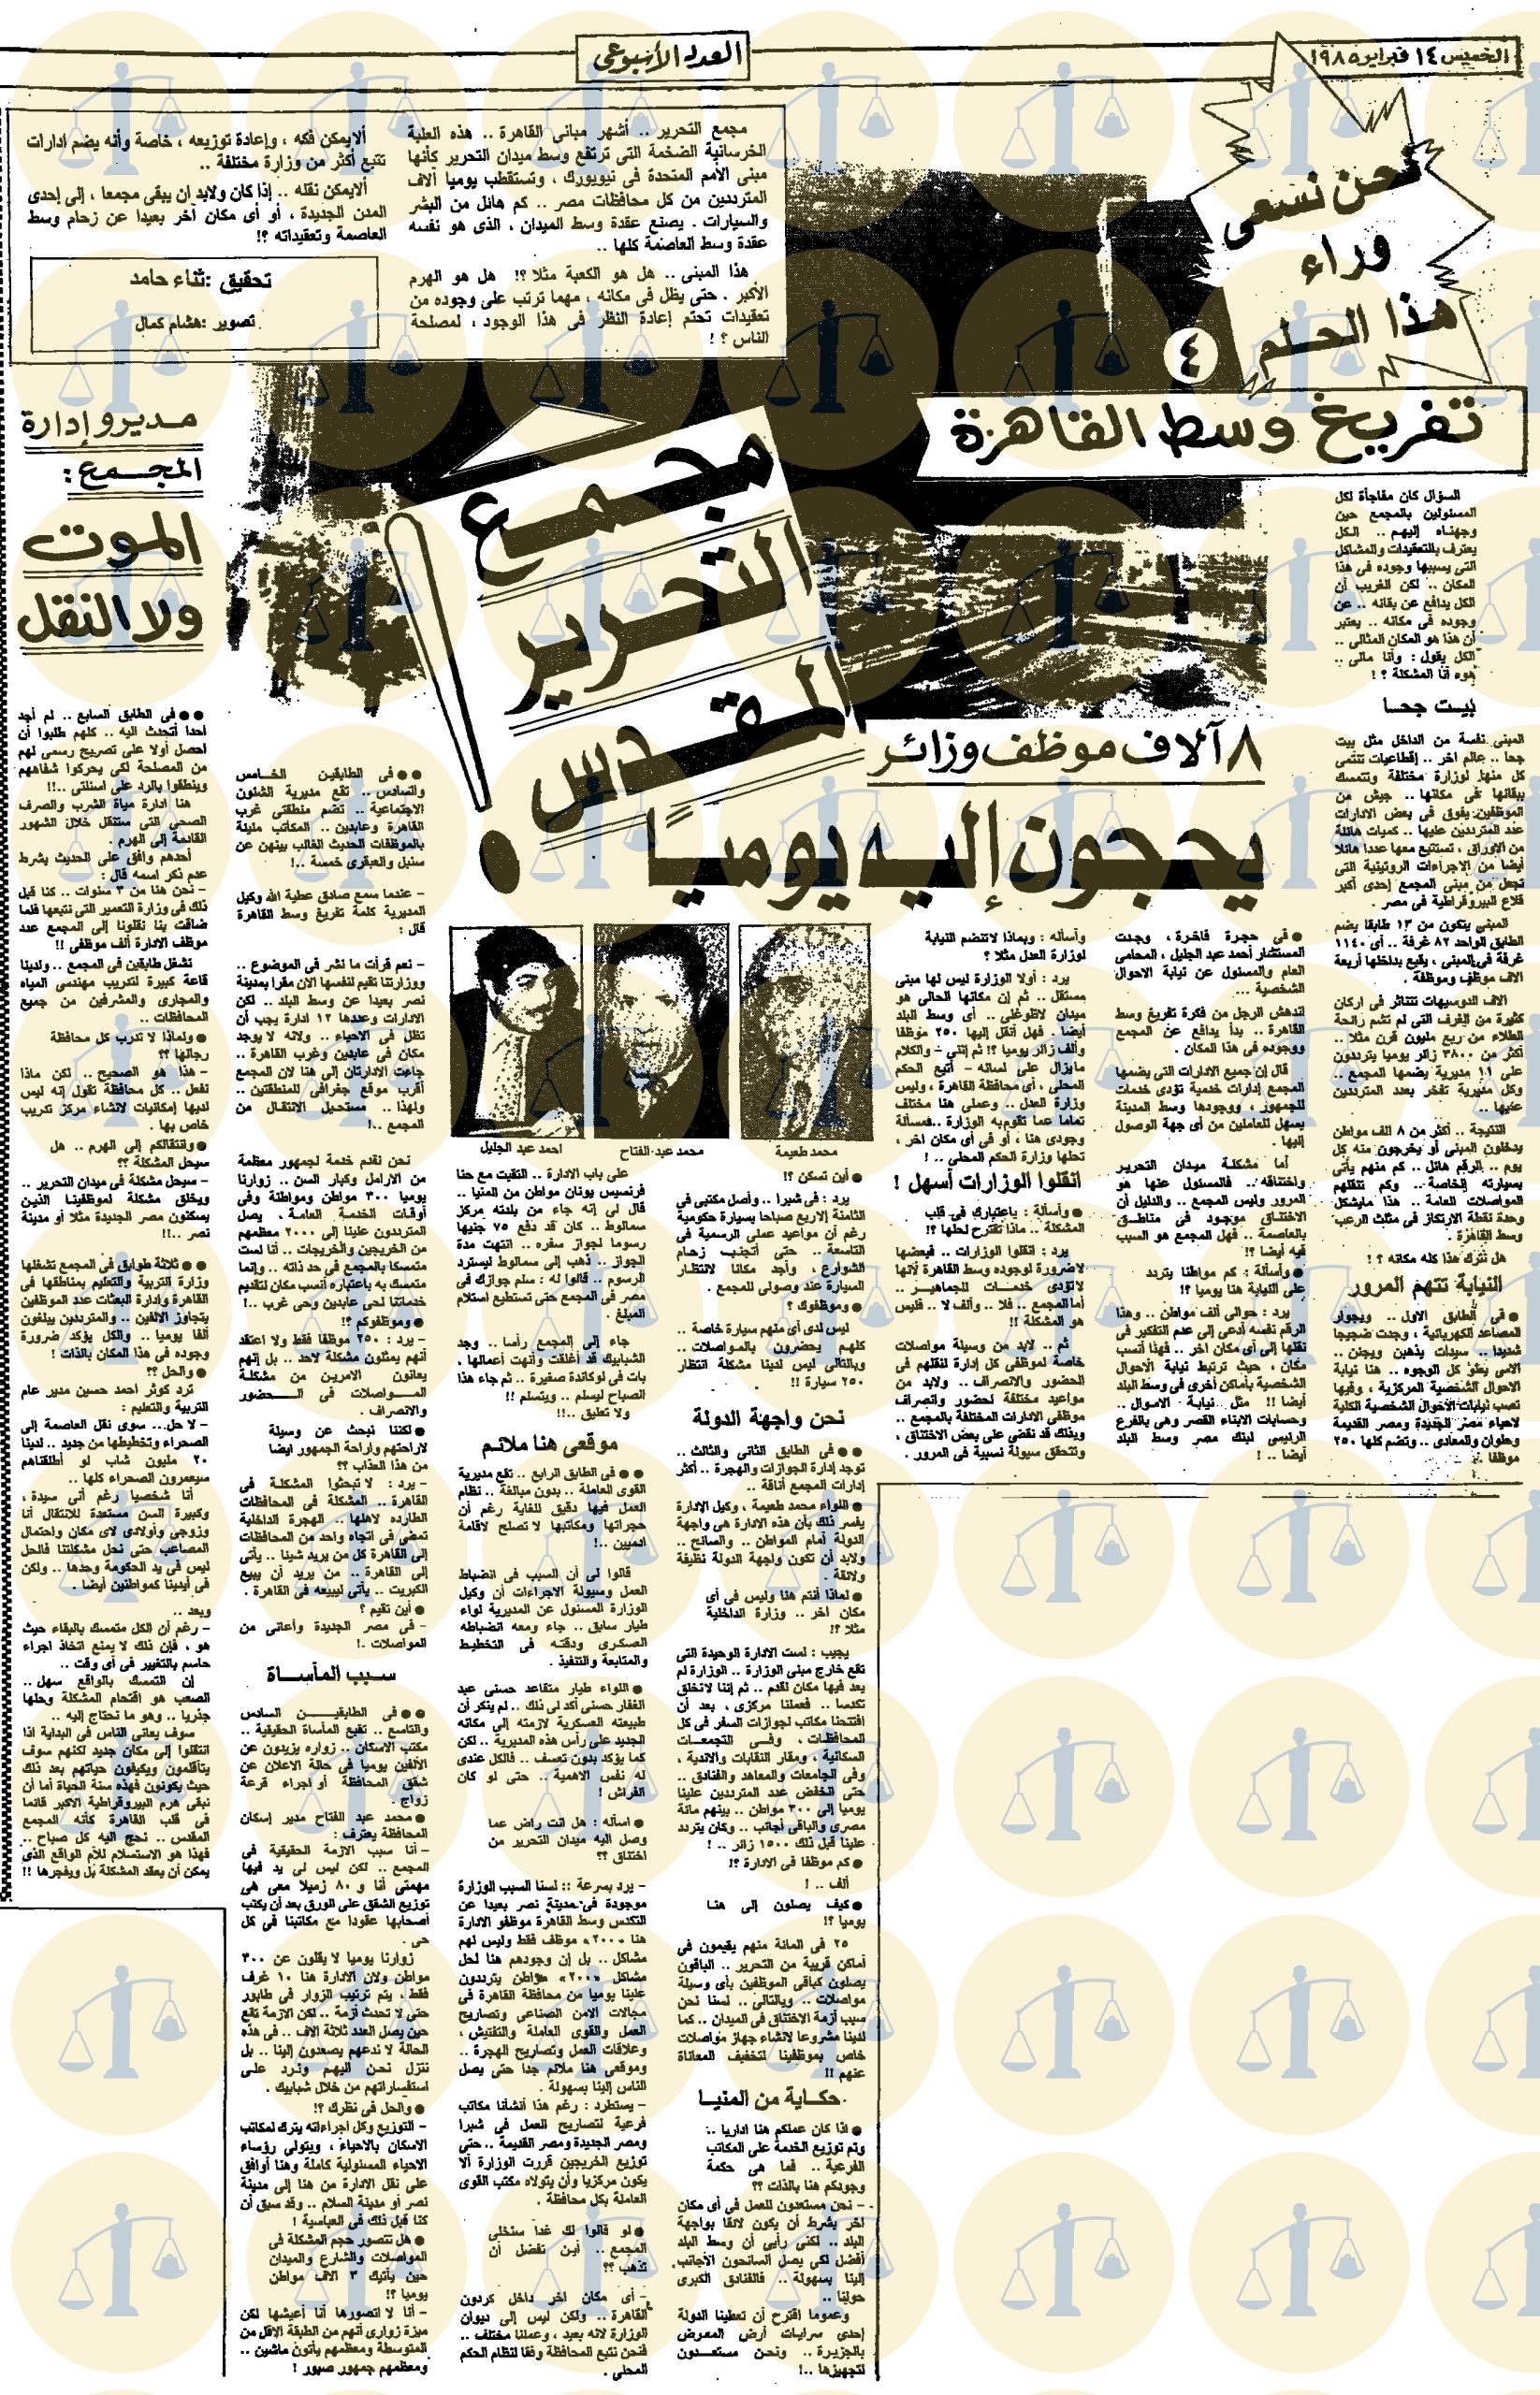 ما يخص مجمع التحرير في حملة جريدة الجمهورية